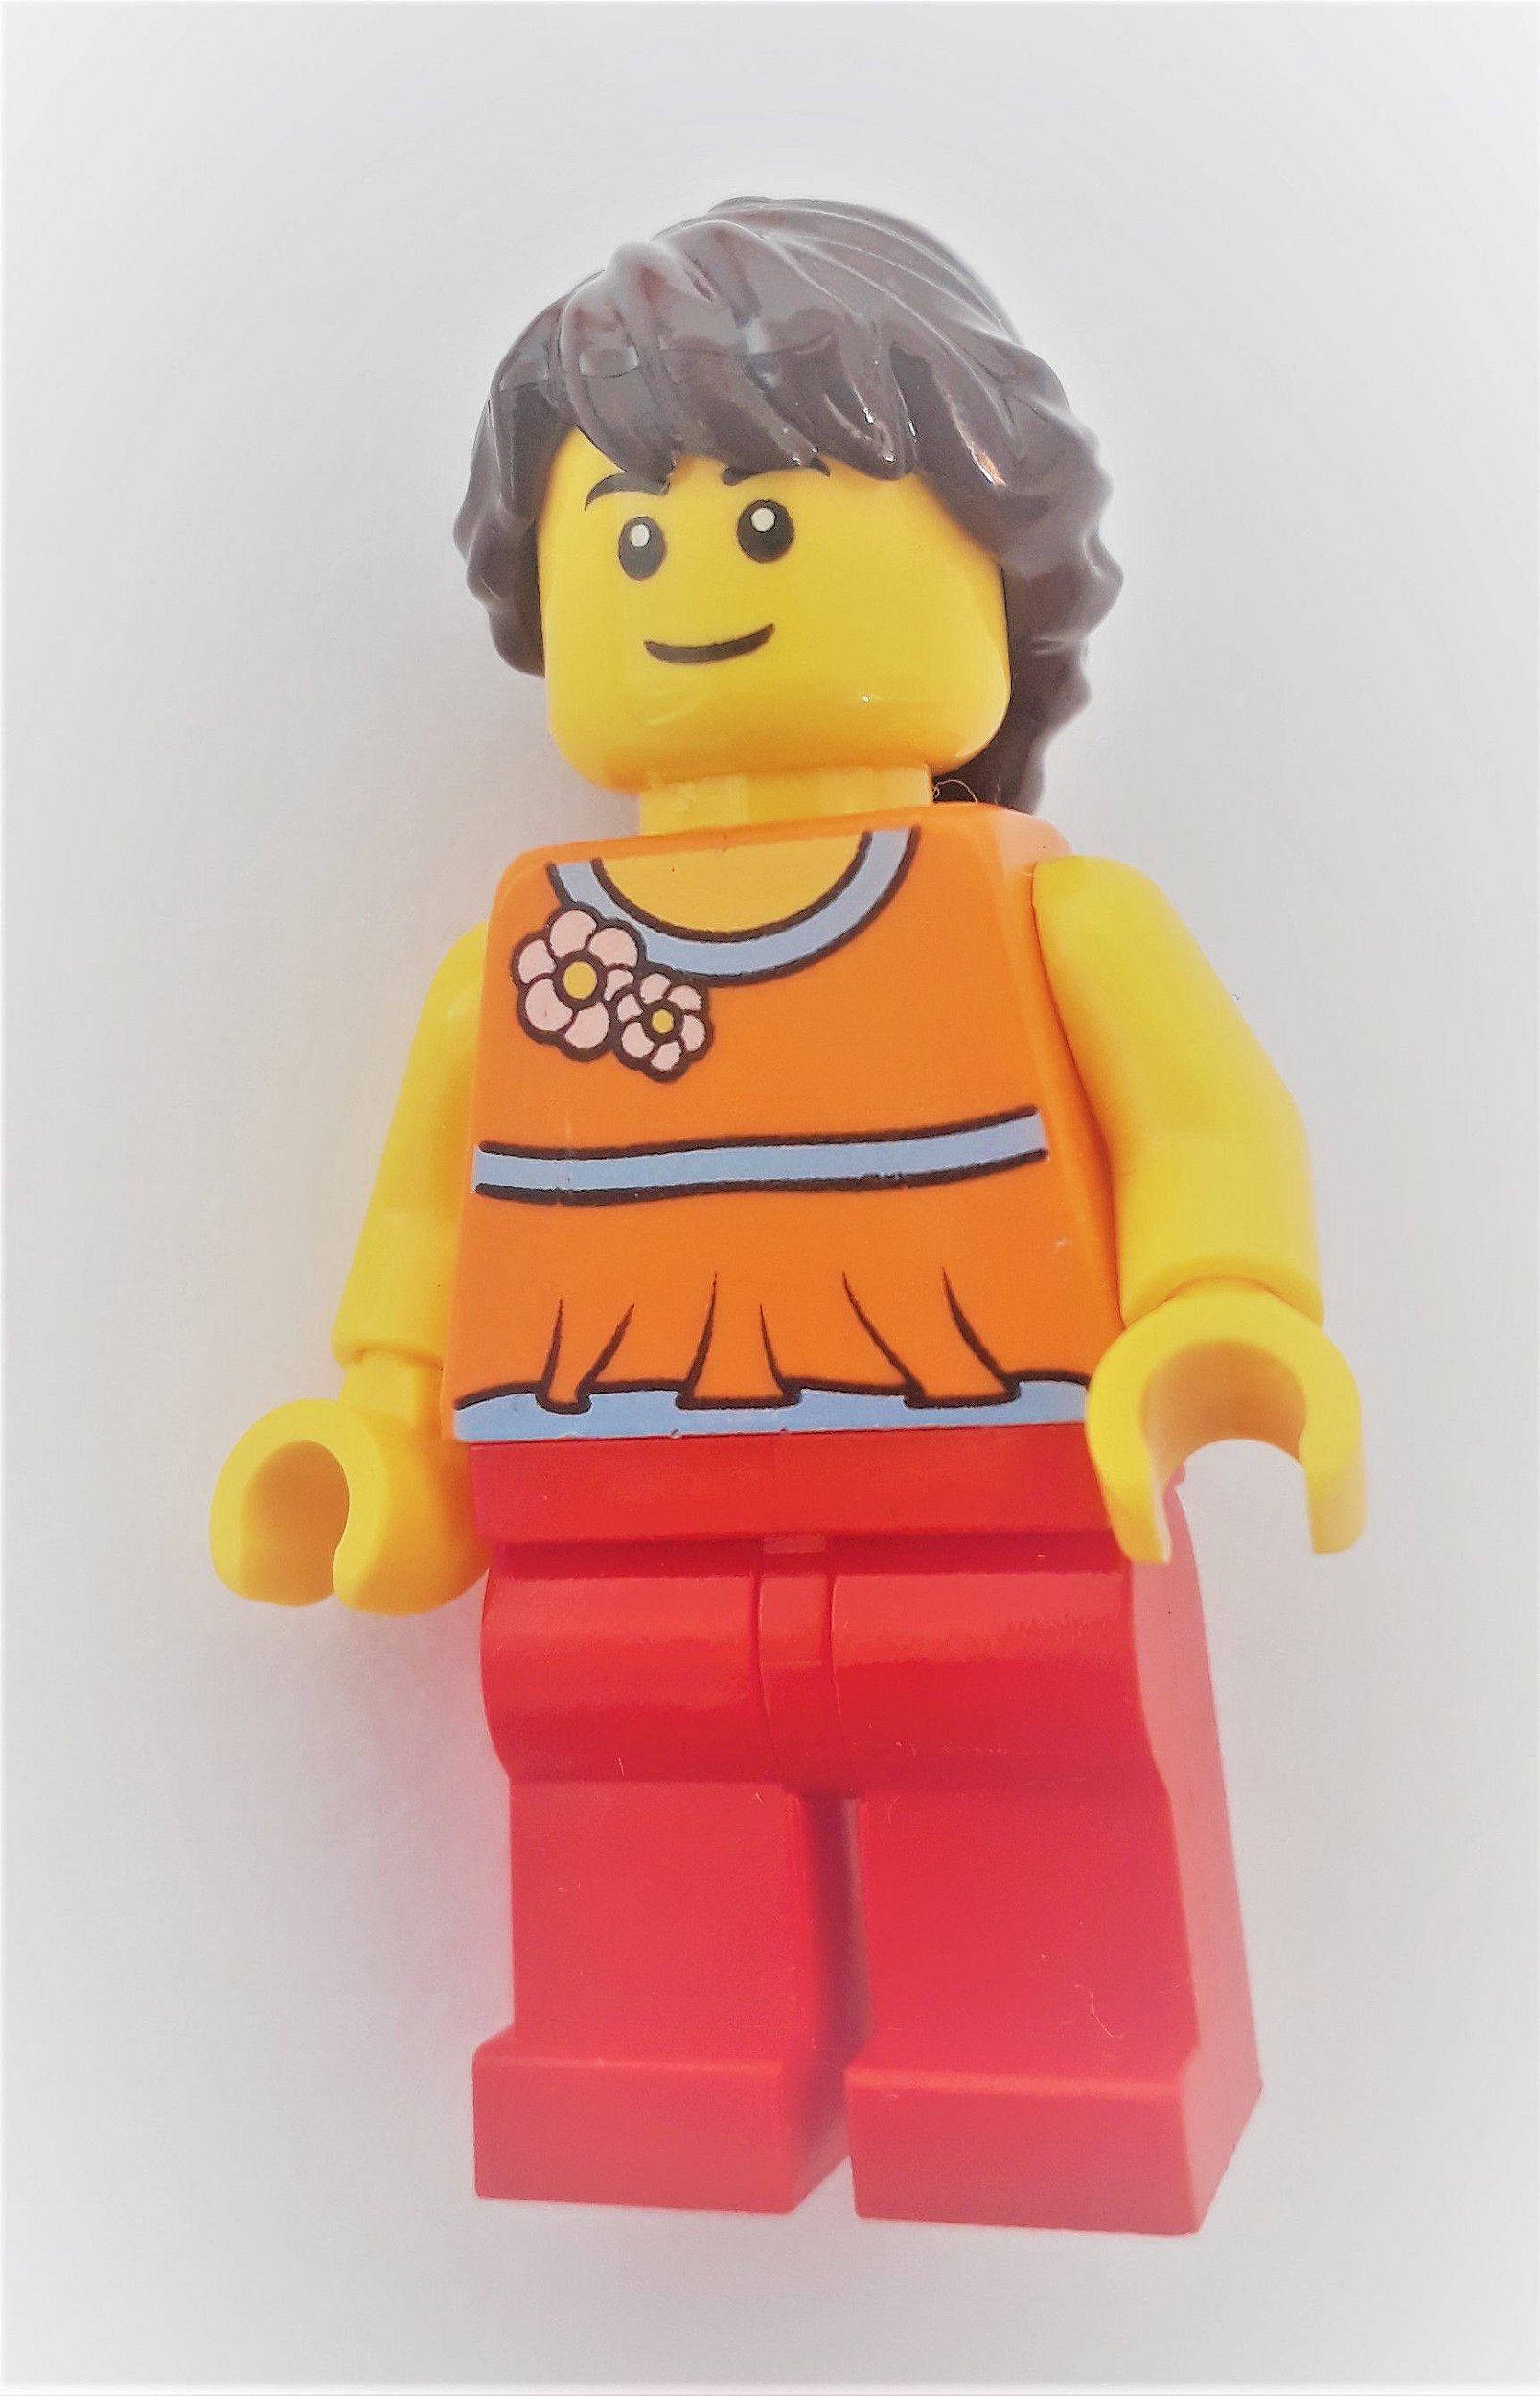 Boneco Lego Education Mia - TECLINC